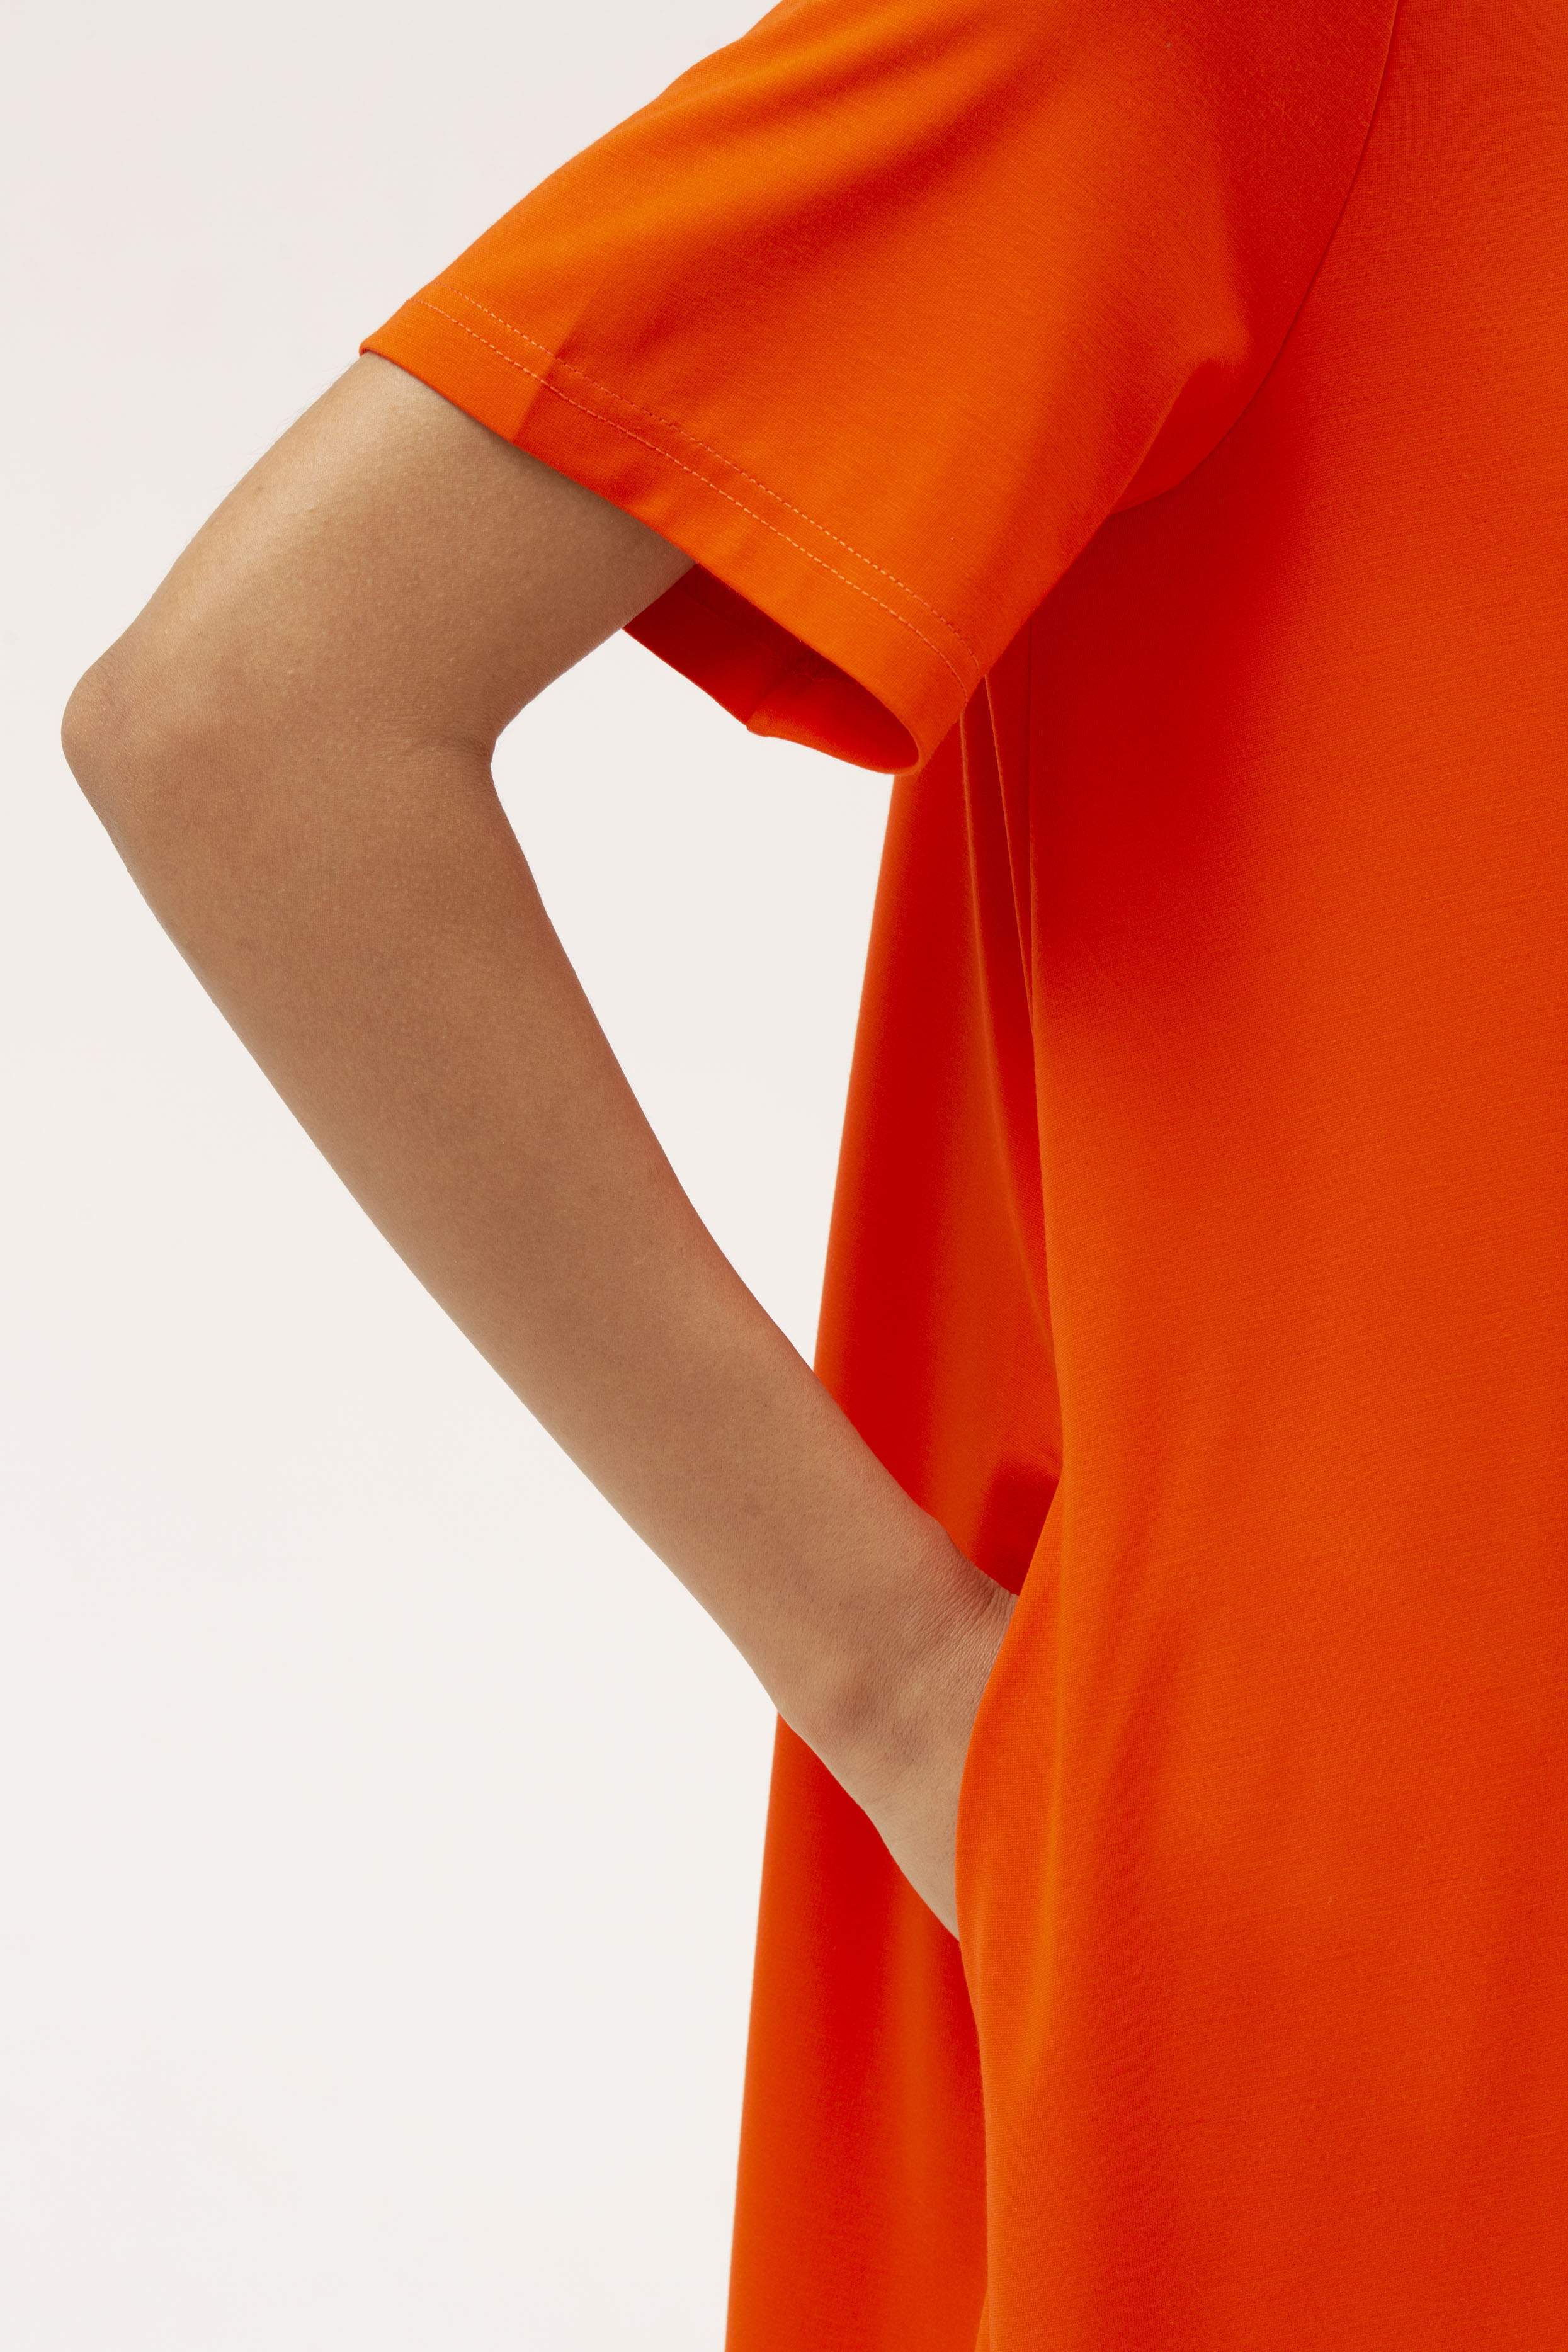 INSPIRE Платье-миди трикотажное А-силуэта (оранжевый)